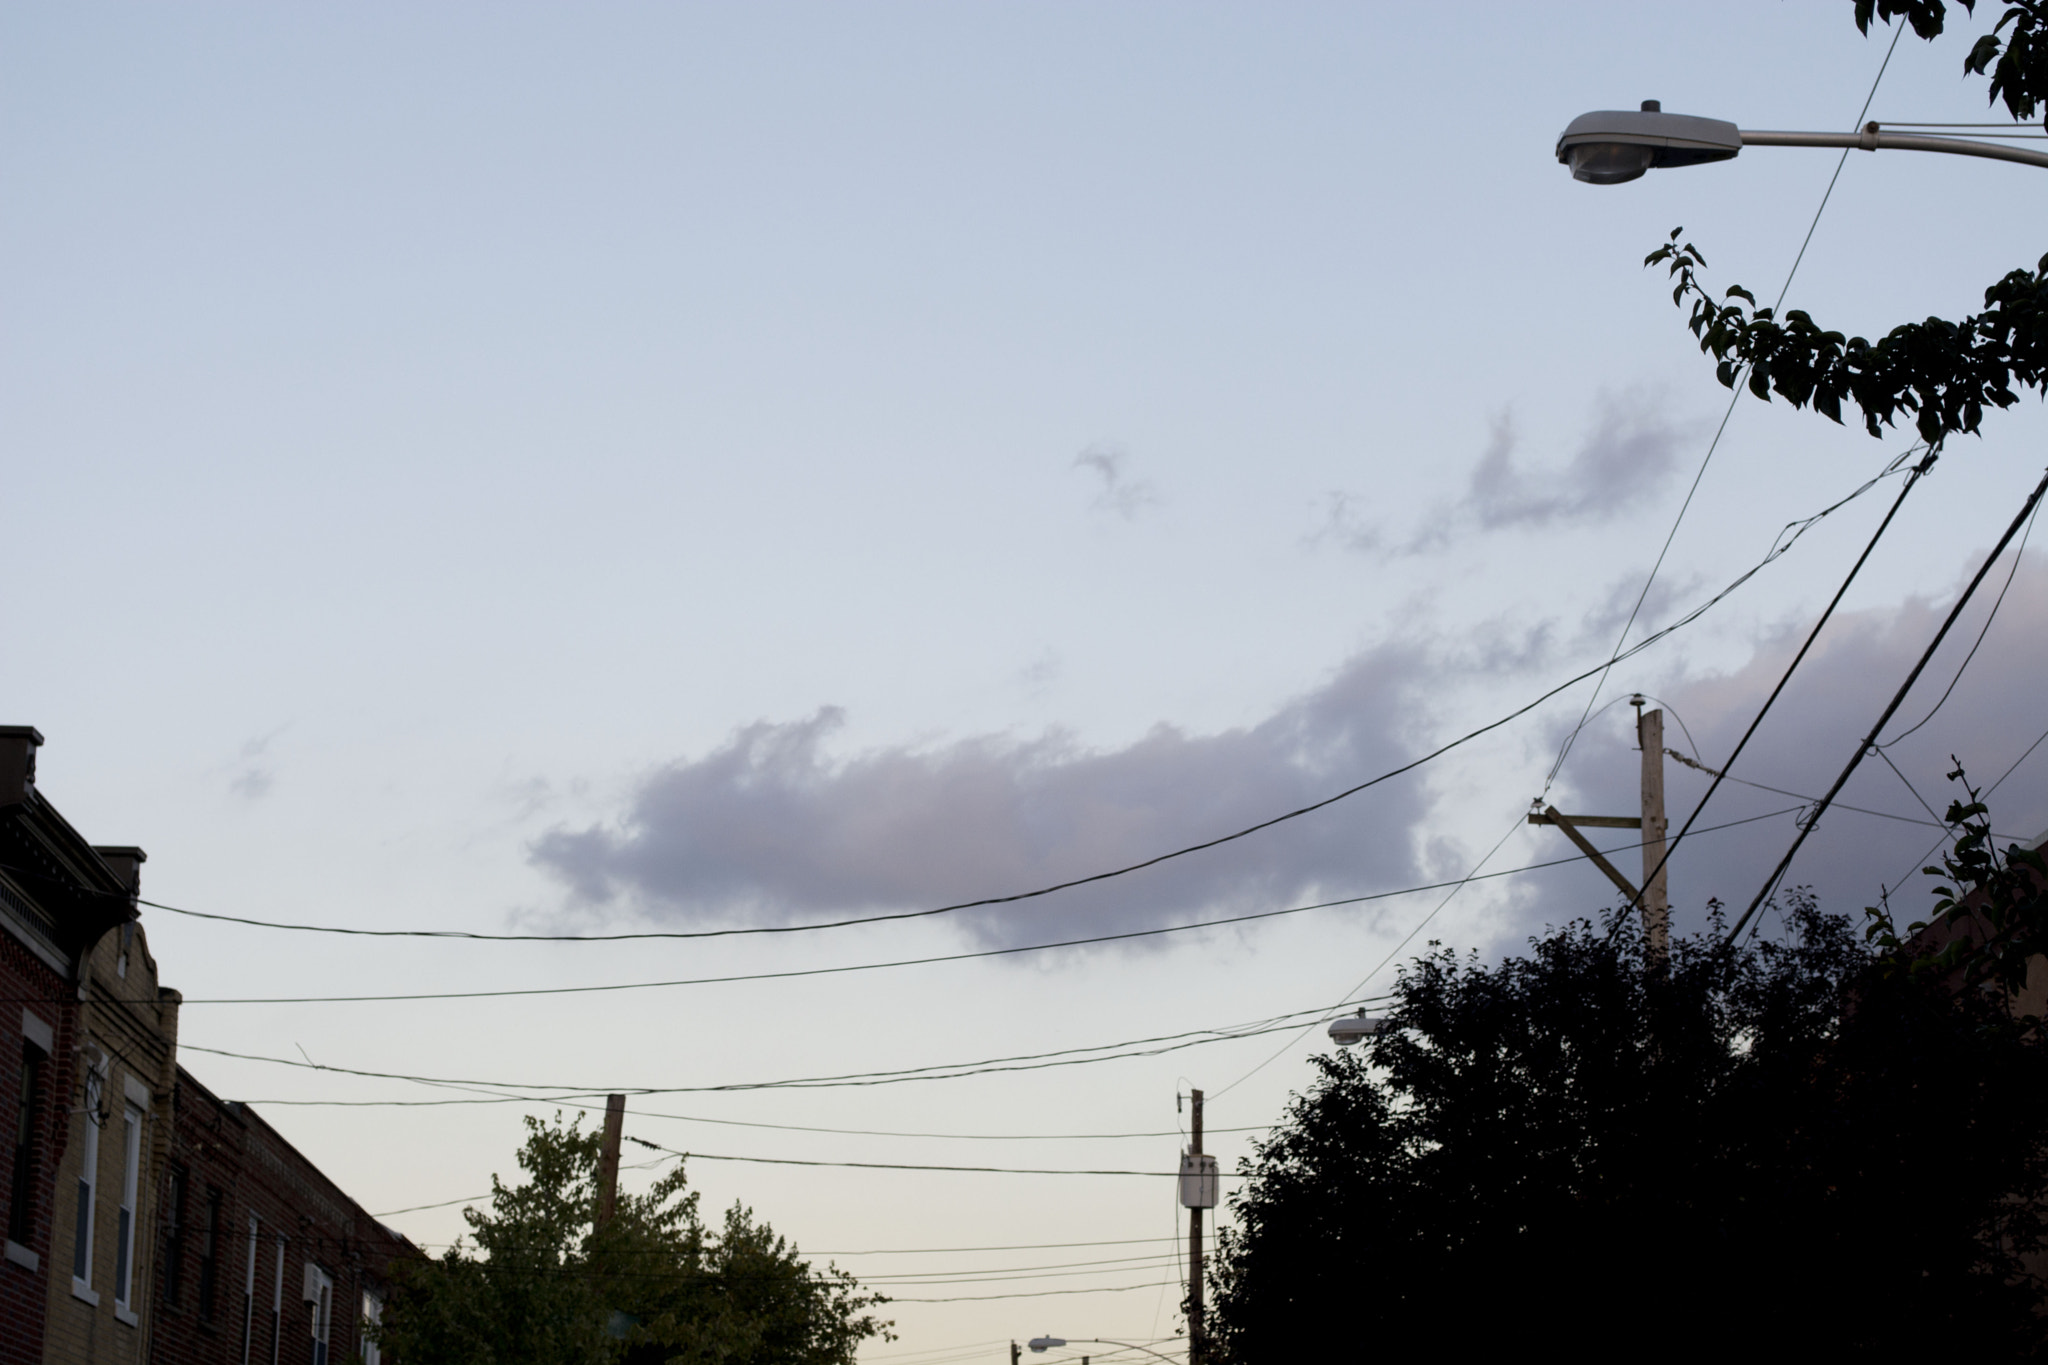 Nikon D5200 sample photo. Clouds at sunset photography